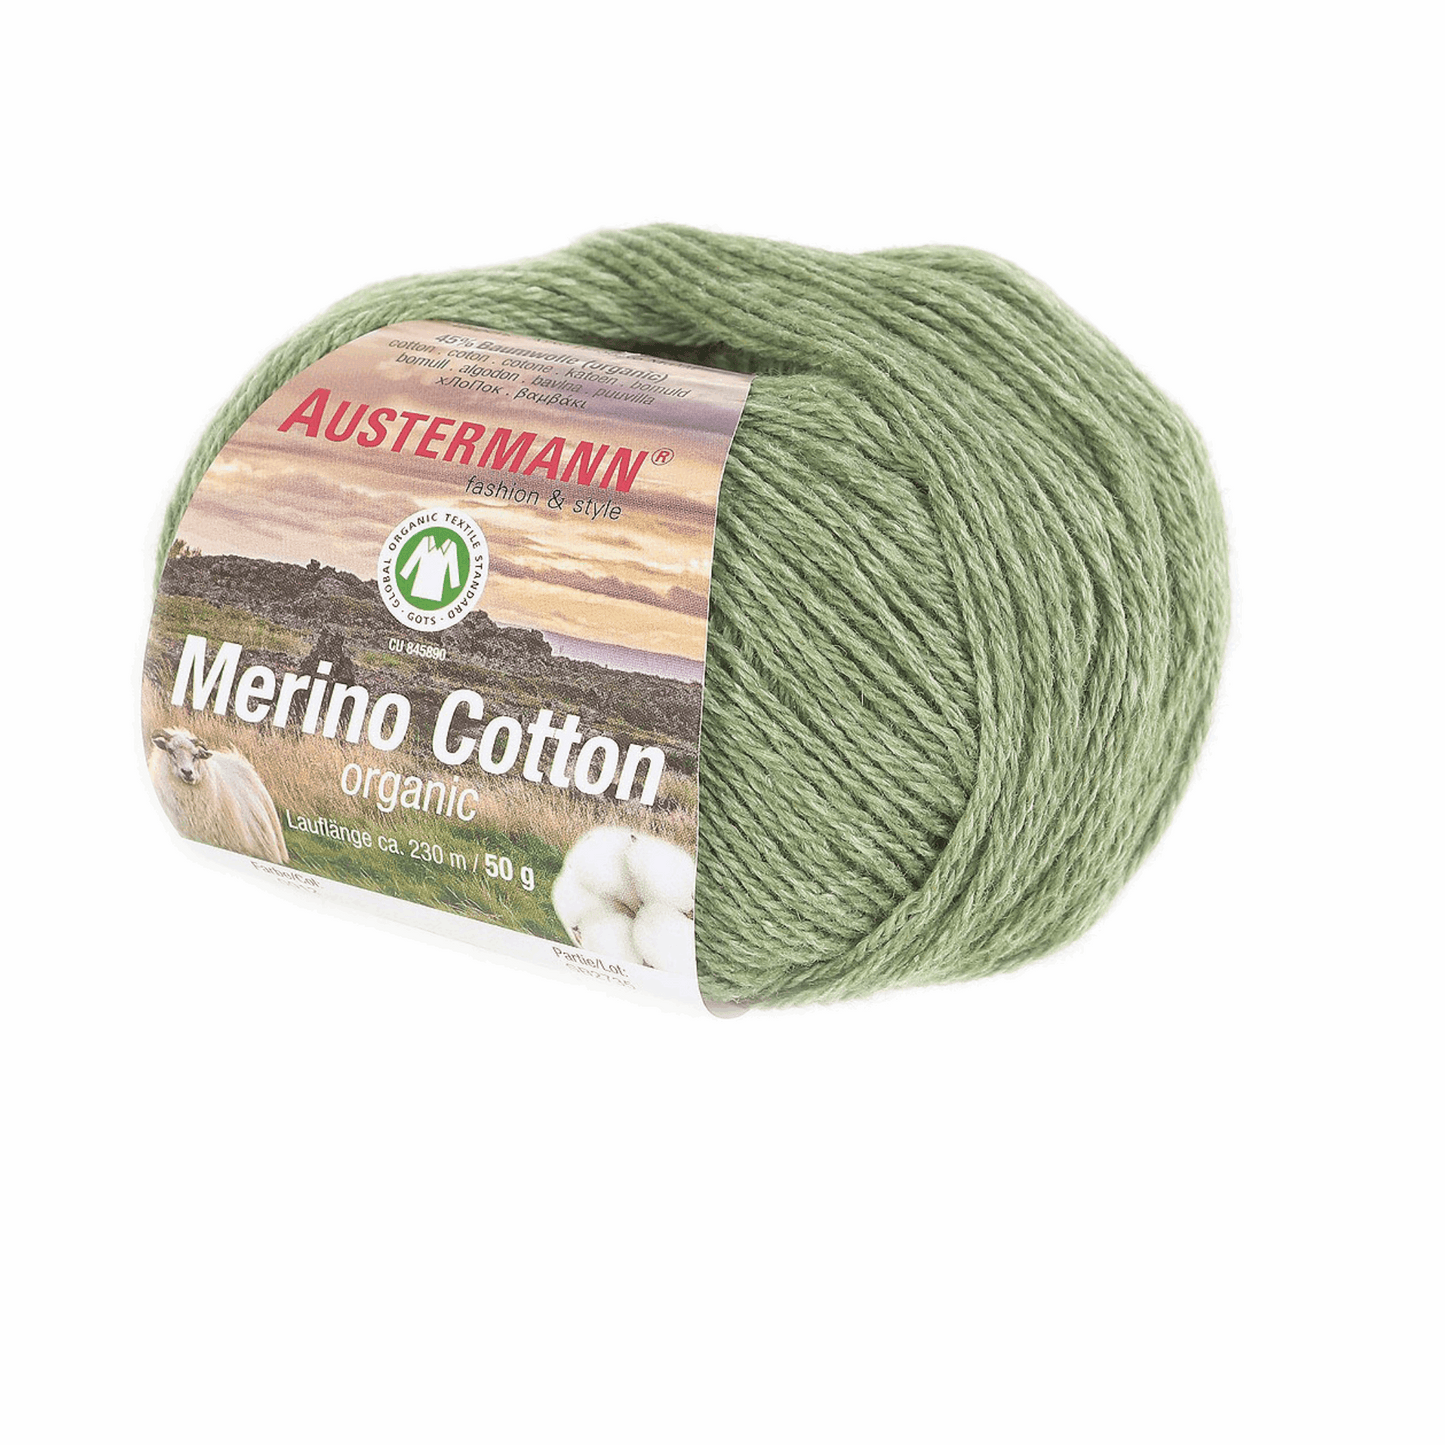 Schoeller-Austermann Gots Merino Cotton, 50g, 98311, Farbe grün 12